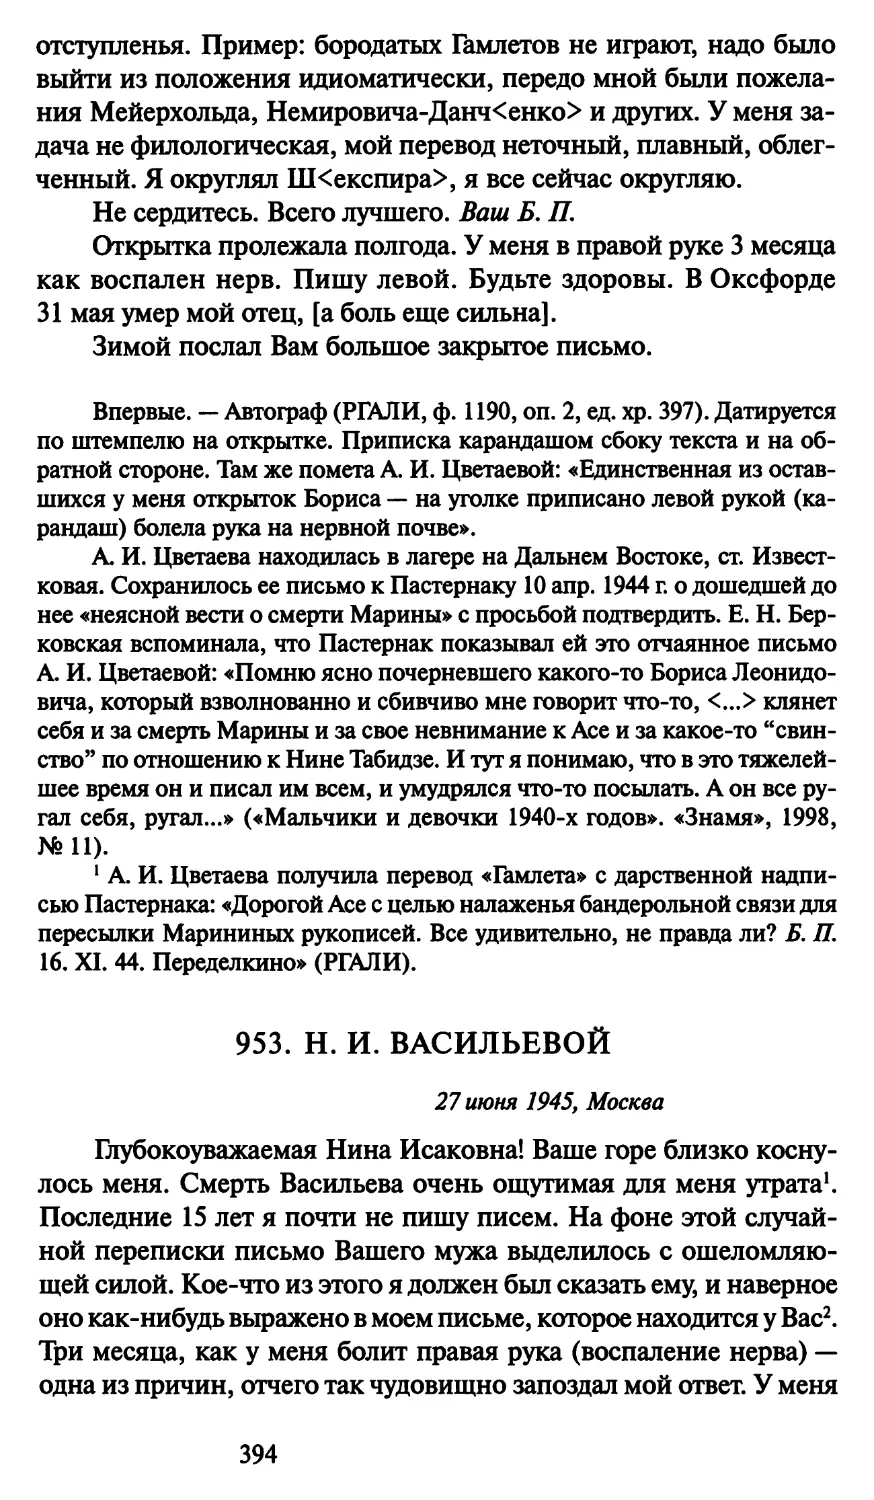 953. Н. И. Васильевой 27 июня 1945